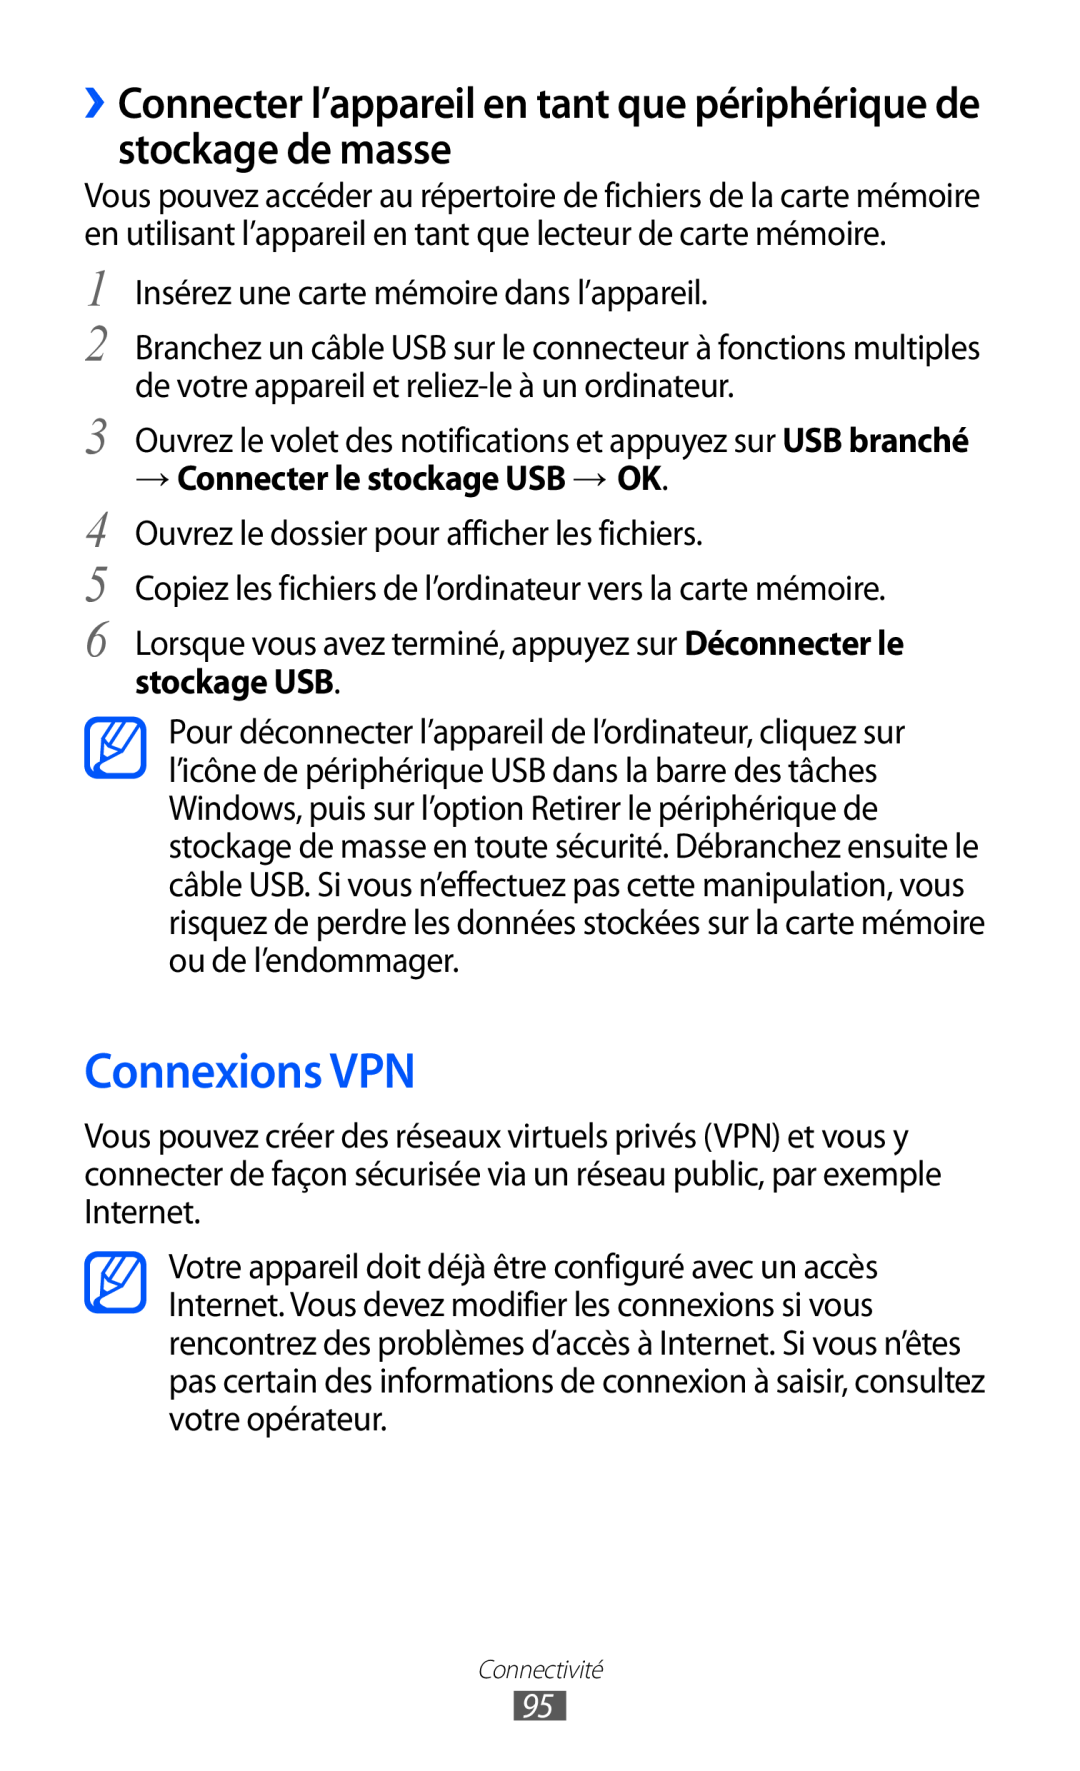 Samsung GT-B5510CAANRJ Connexions VPN, ››Connecter l’appareil en tant que périphérique de stockage de masse, stockage USB 